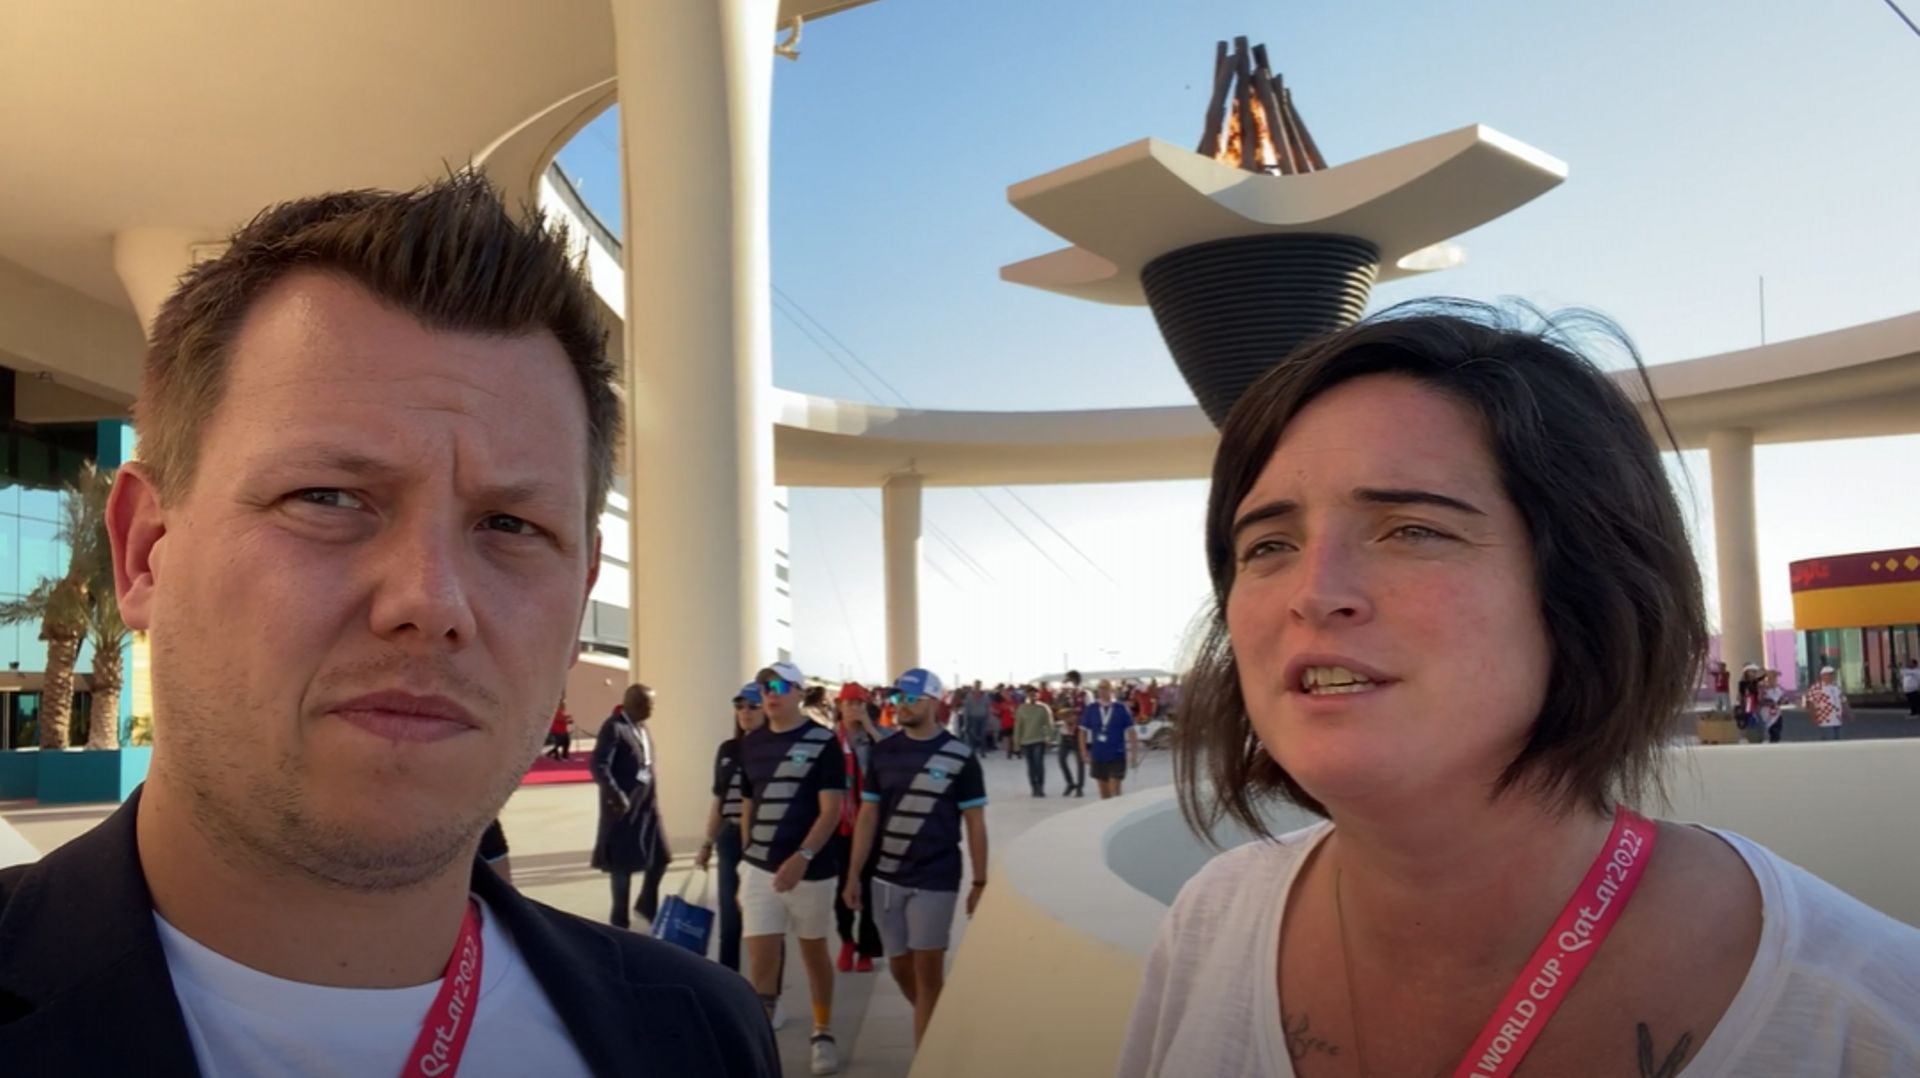 Cécile de Gernier analyse le nul entre le Maroc et la Croatie : "Personne n’a pris le risque de perdre ce match"